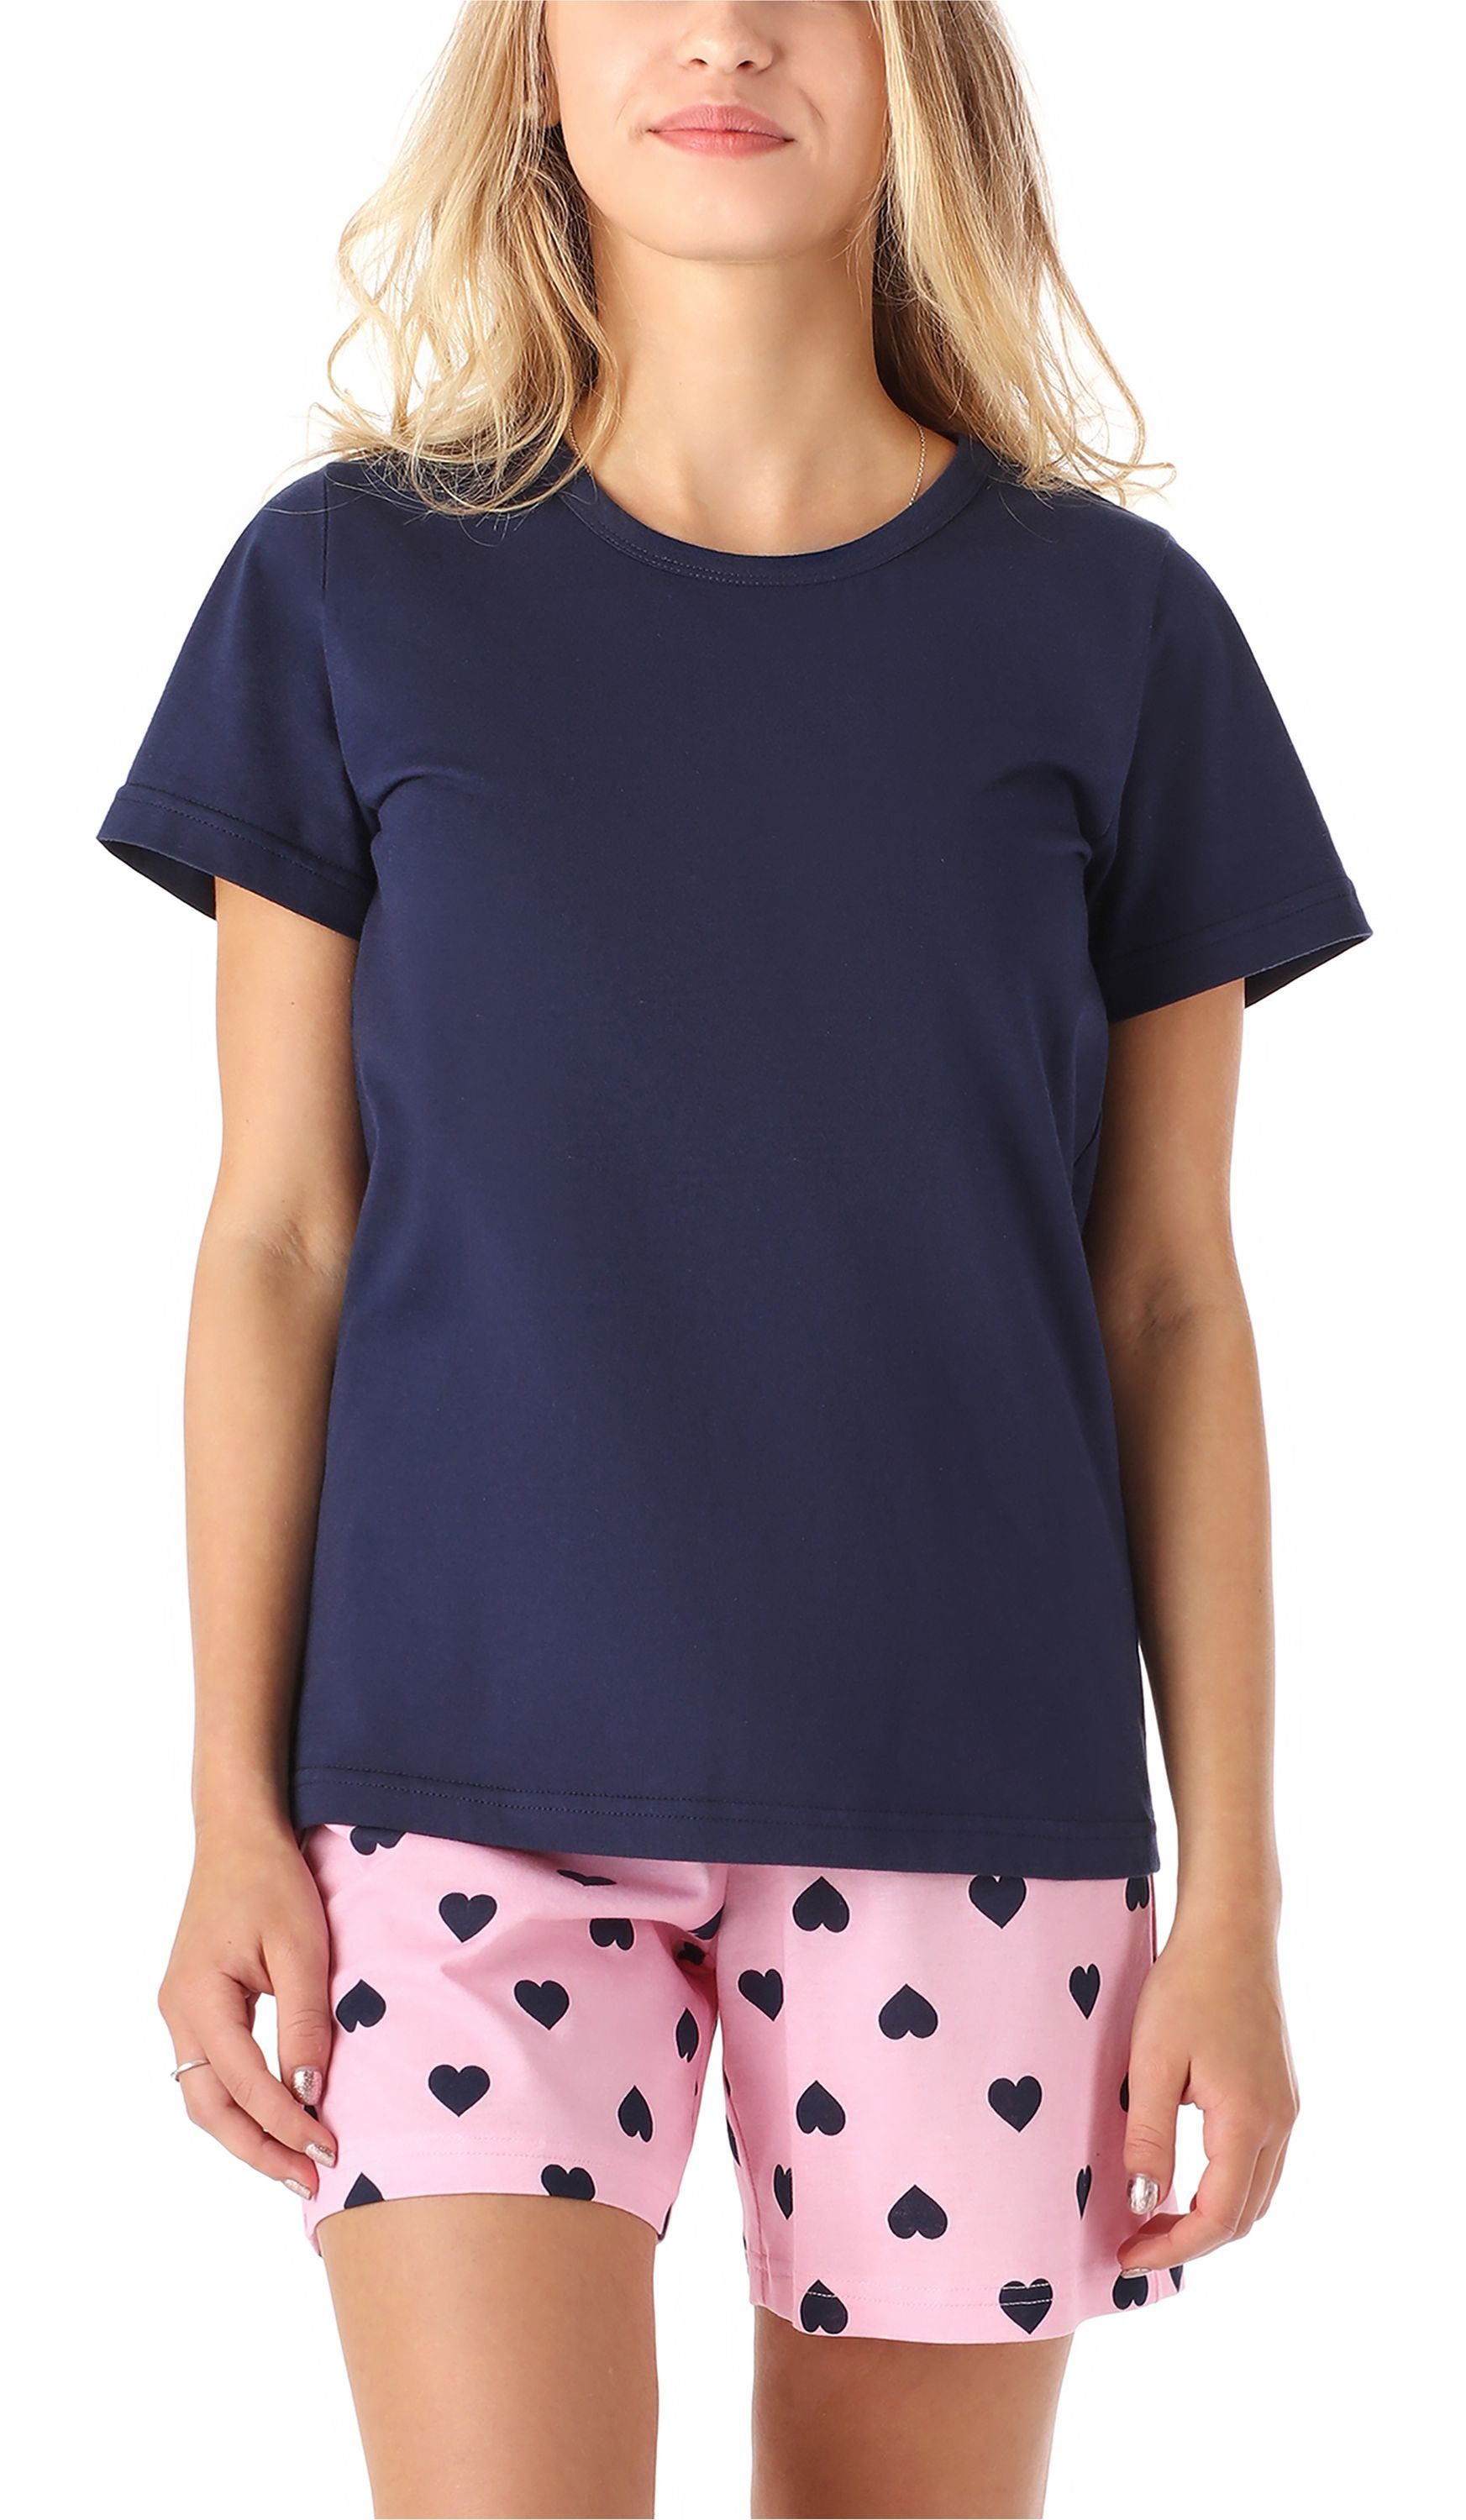 MS10-265 Set Schlafanzug Herz Mädchen Style Merry Pyjama Baumwolle Kurz aus Schlafanzüge Marine